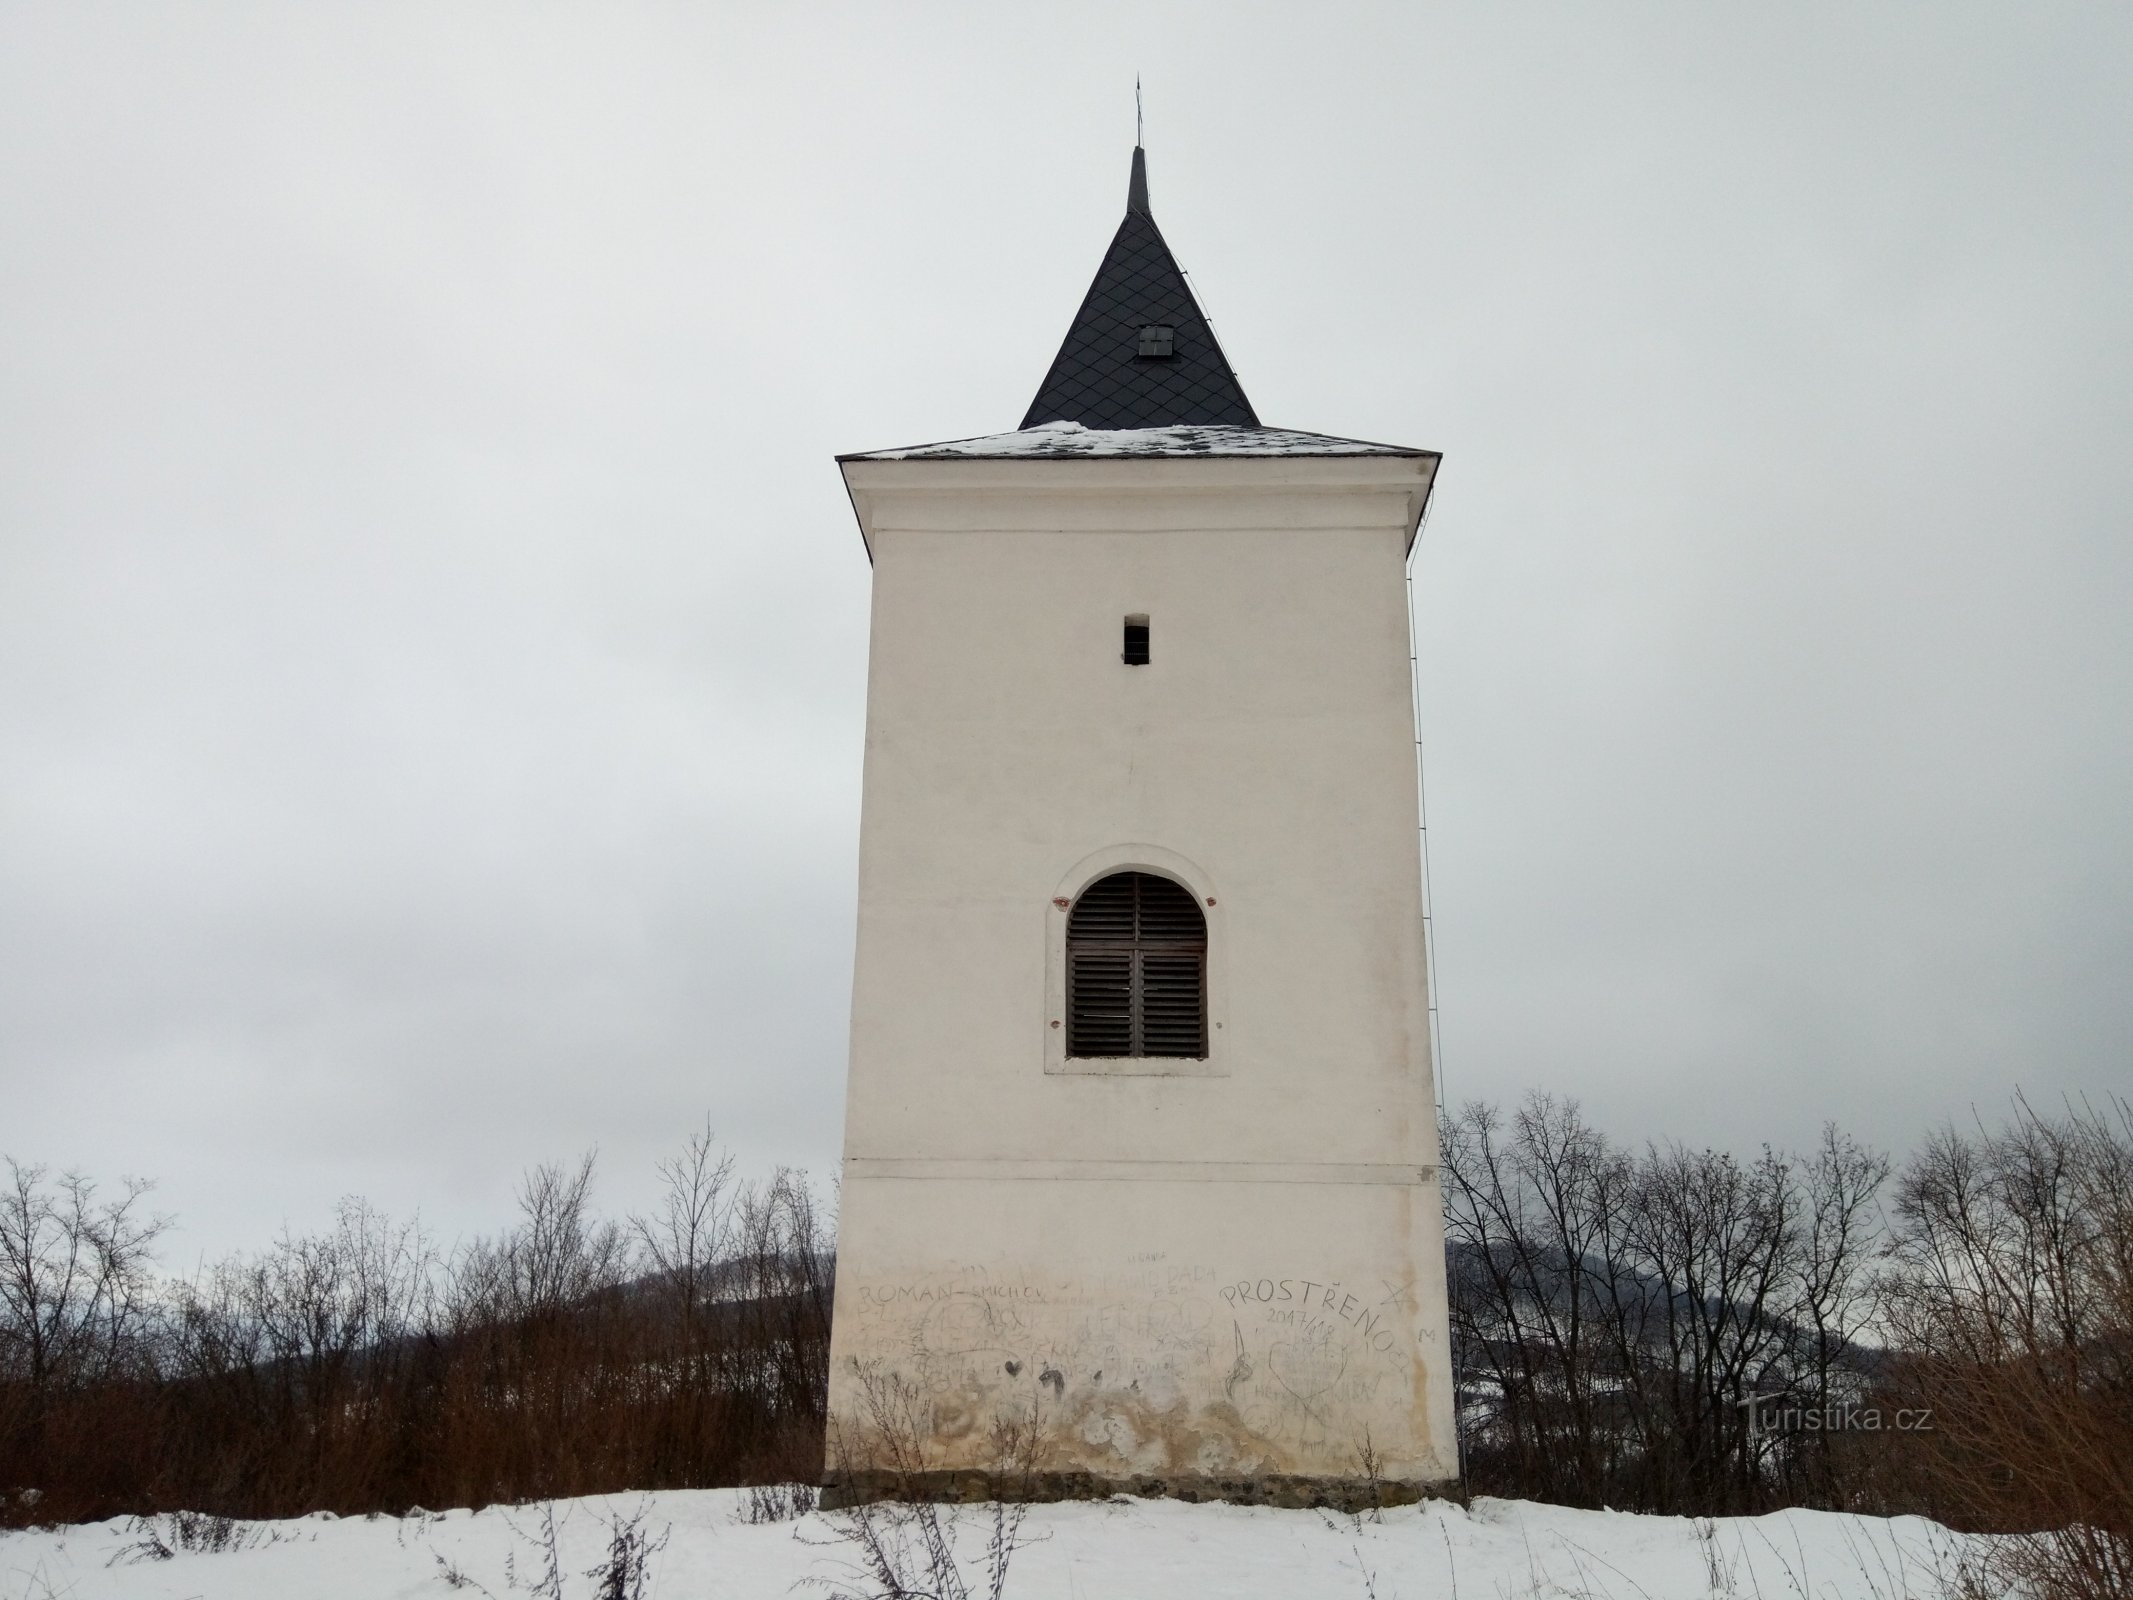 Levín - bell tower